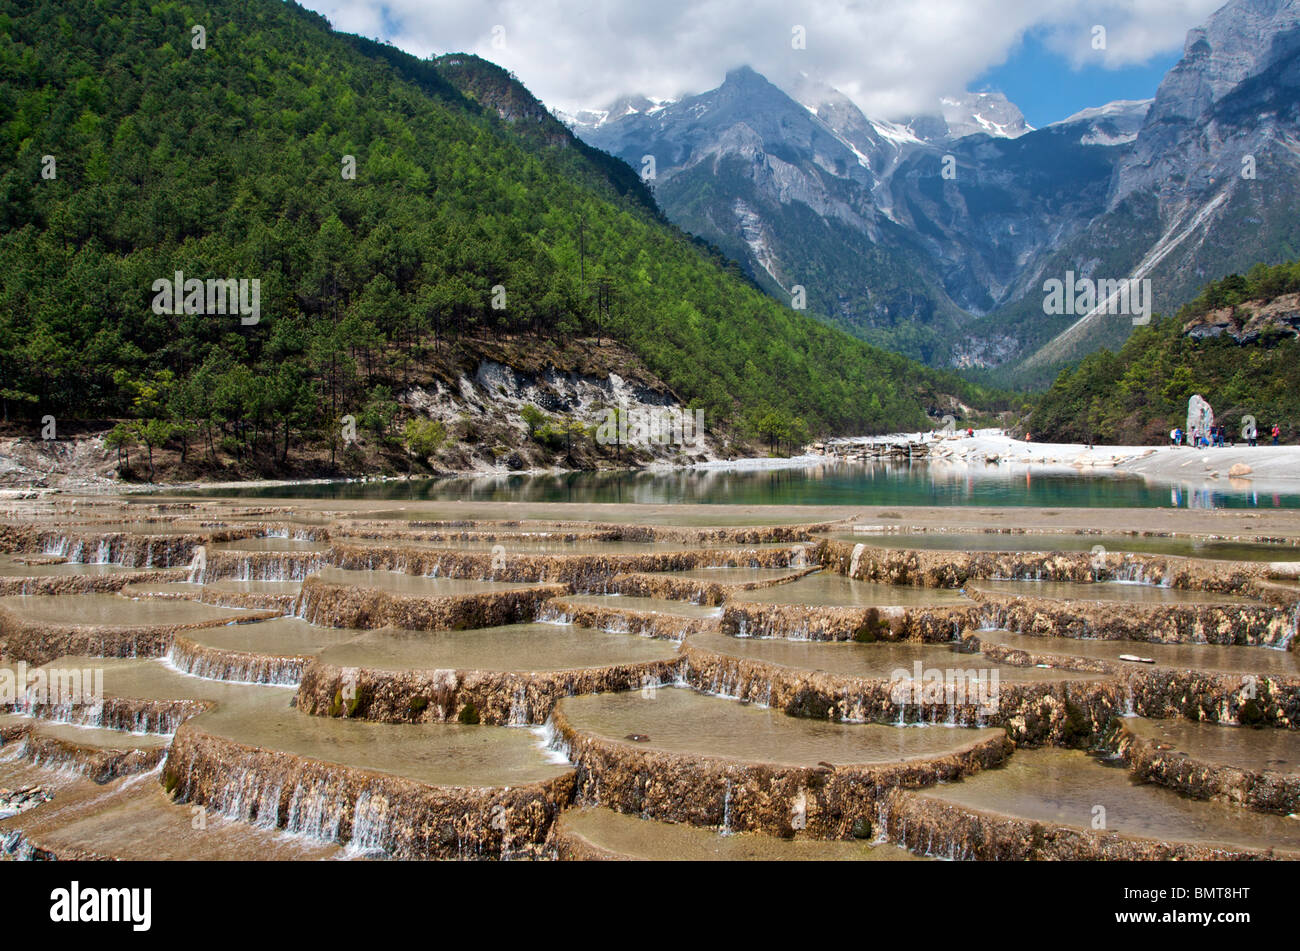 Water running over weir Yulong Xueshan (Jade Dragon) Mountain near Lijiang Yunnan China Stock Photo